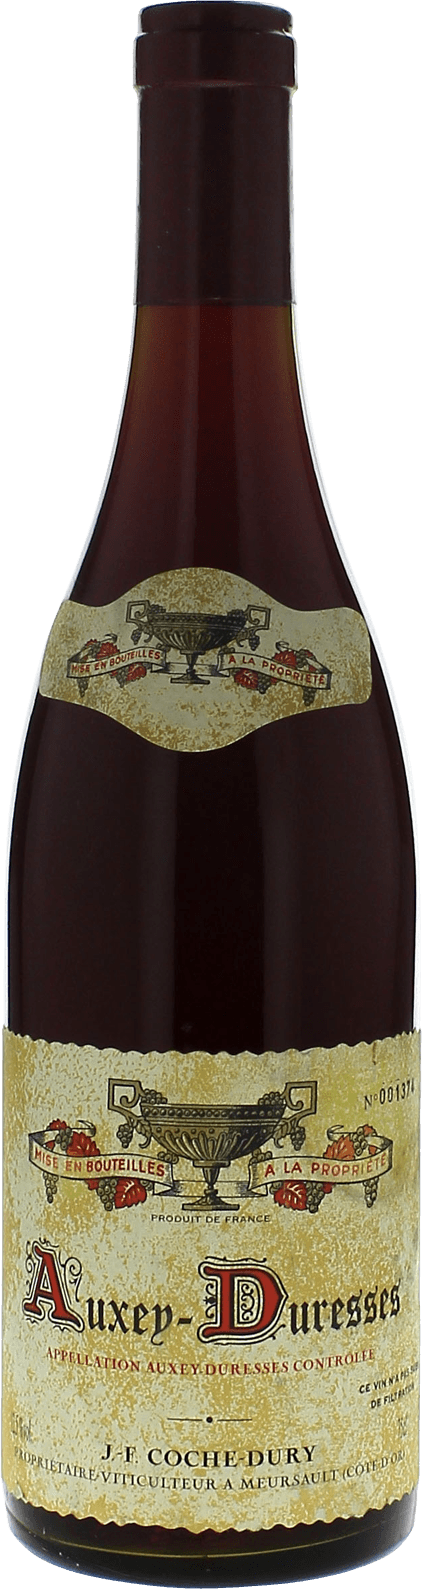 Auxey-duresses cte de beaune 2013 Domaine COCHE-DURY, Bourgogne rouge